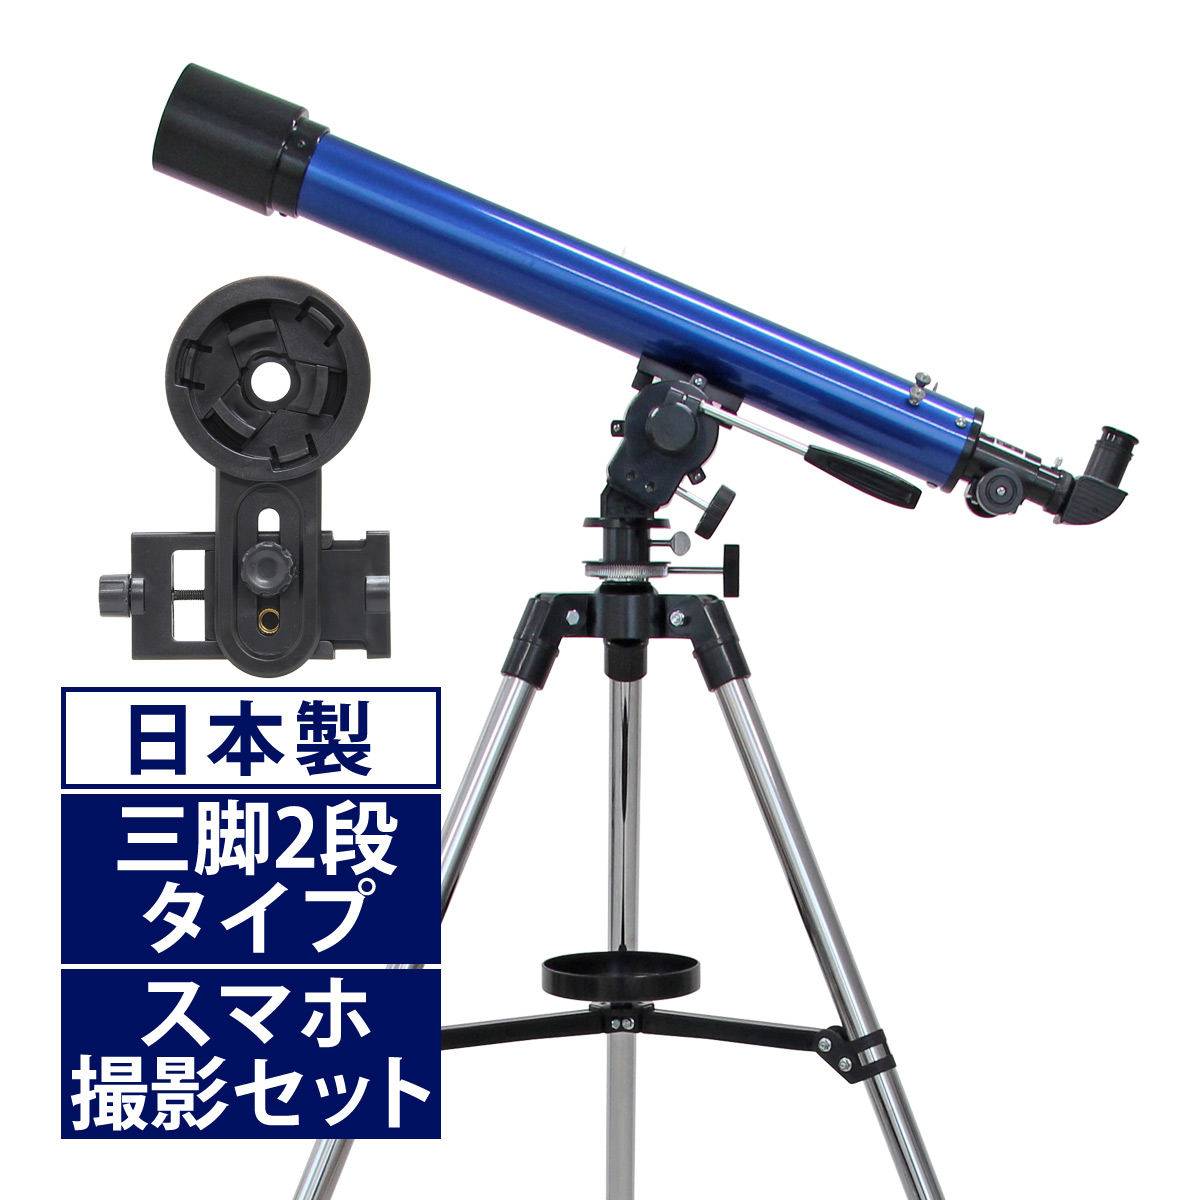 天体望遠鏡 スマホ 撮影 初心者 リゲルハイ60D 日本製 天体望遠鏡セット 望遠鏡 天体 携帯 子供 小学生 屈折式 ブルー 天体ガイドブック付き スマートフォン 天体観測